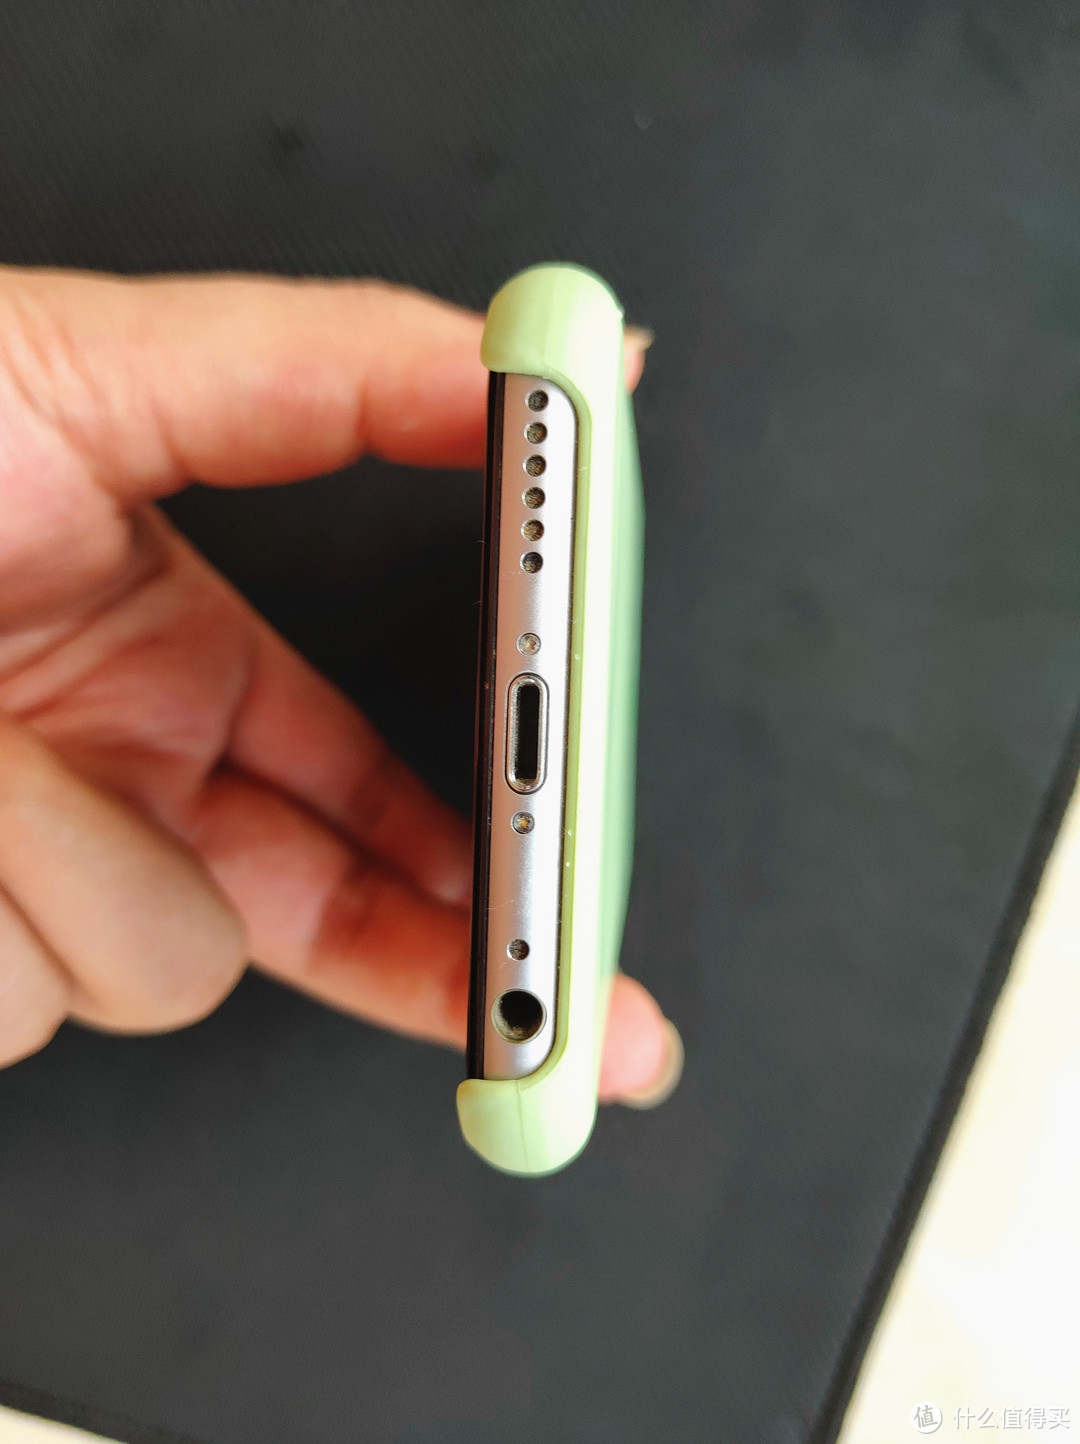 再战三年同样需要保护—iPhone 6S 薄荷绿 液态硅胶保护套开箱体验